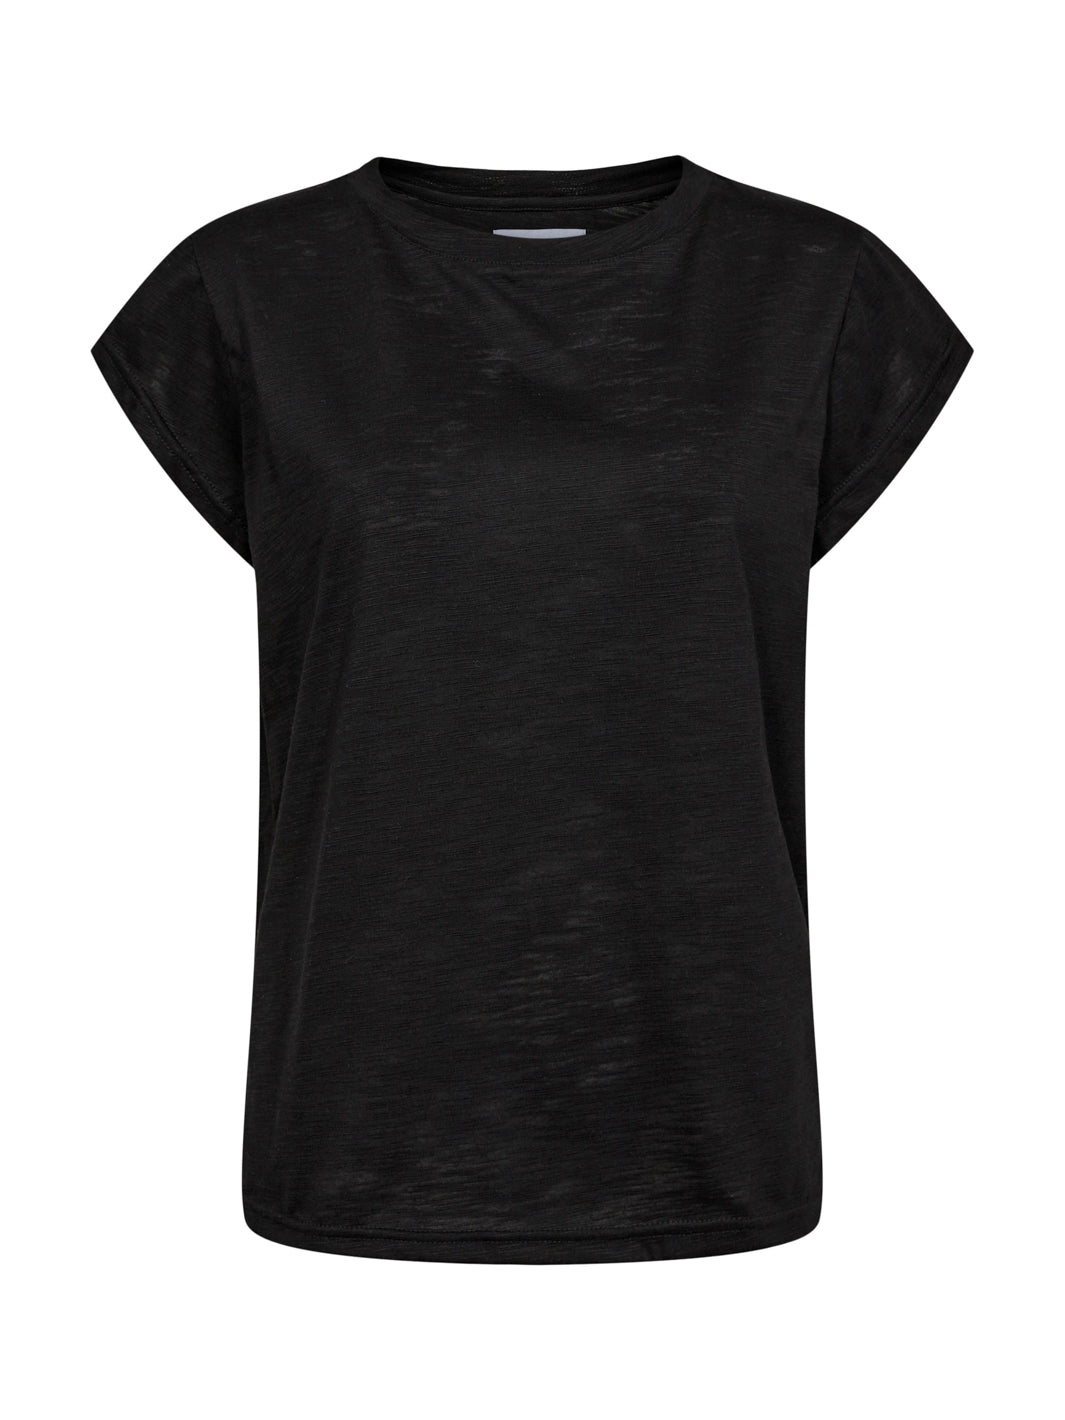 Liberté Ulla t-shirt black - Online-Mode